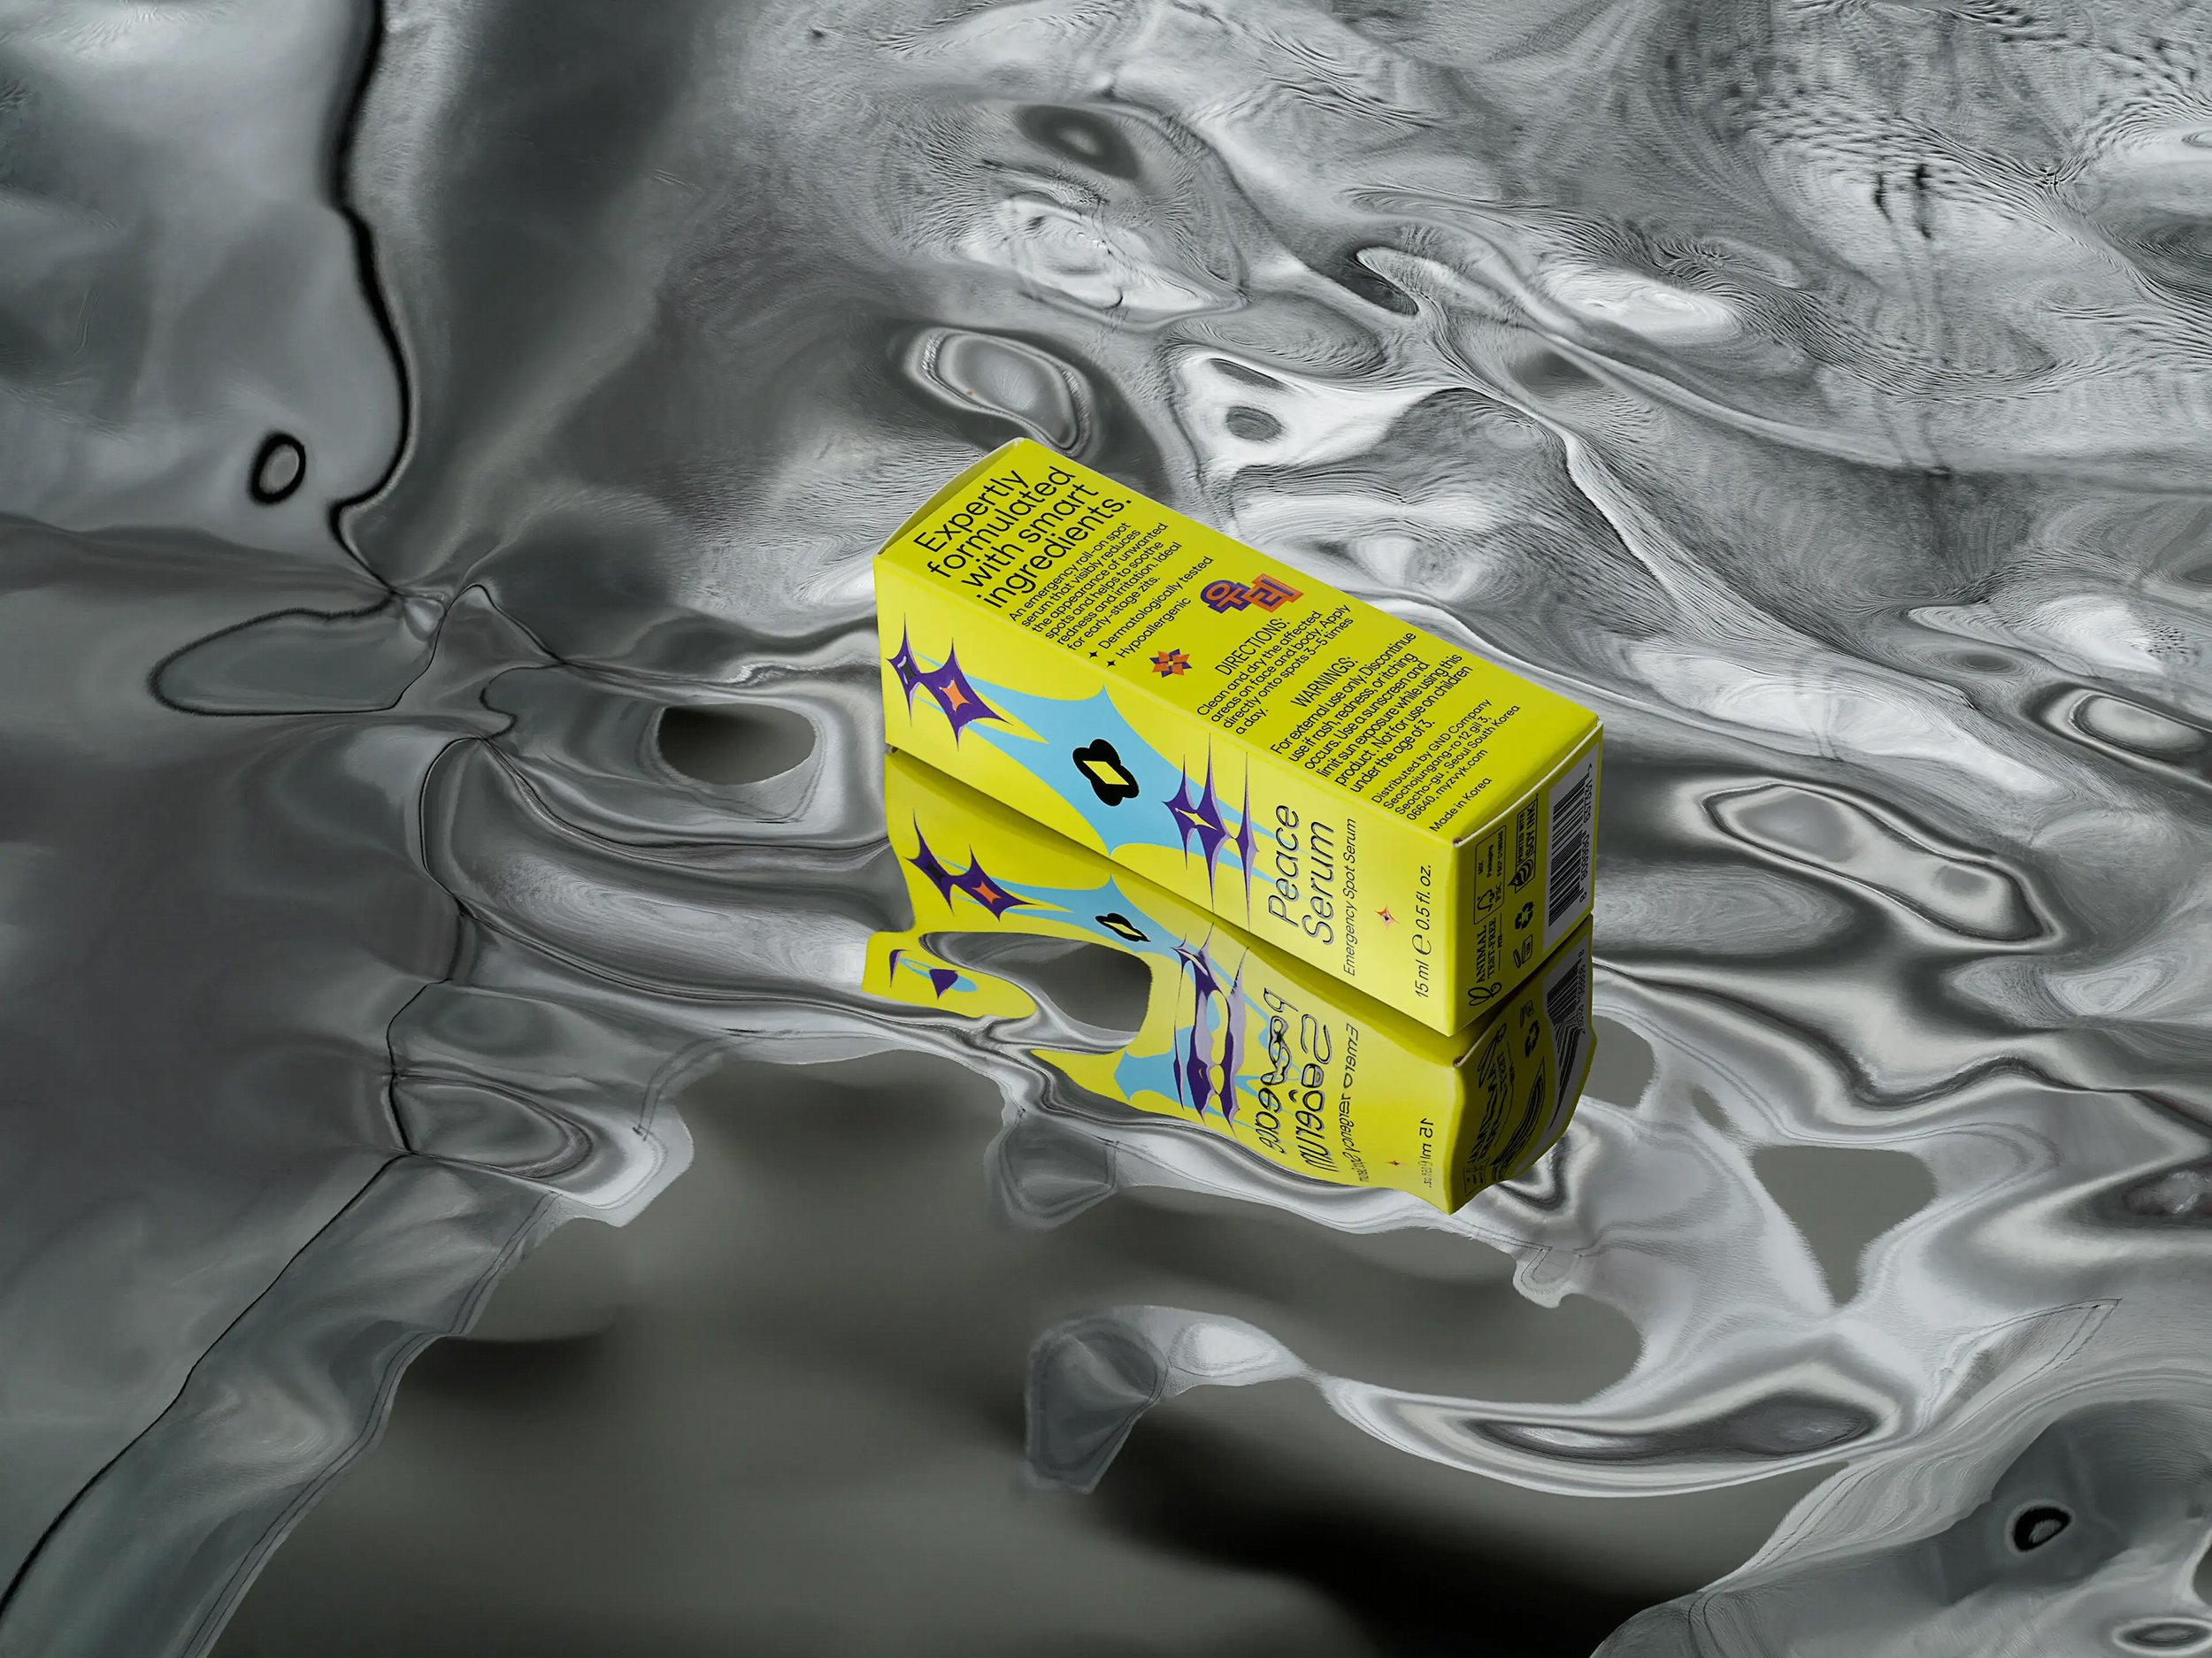 New brand identity and packaging design by Hong Kong-based Oddity Studio for skin care brand ZVYK